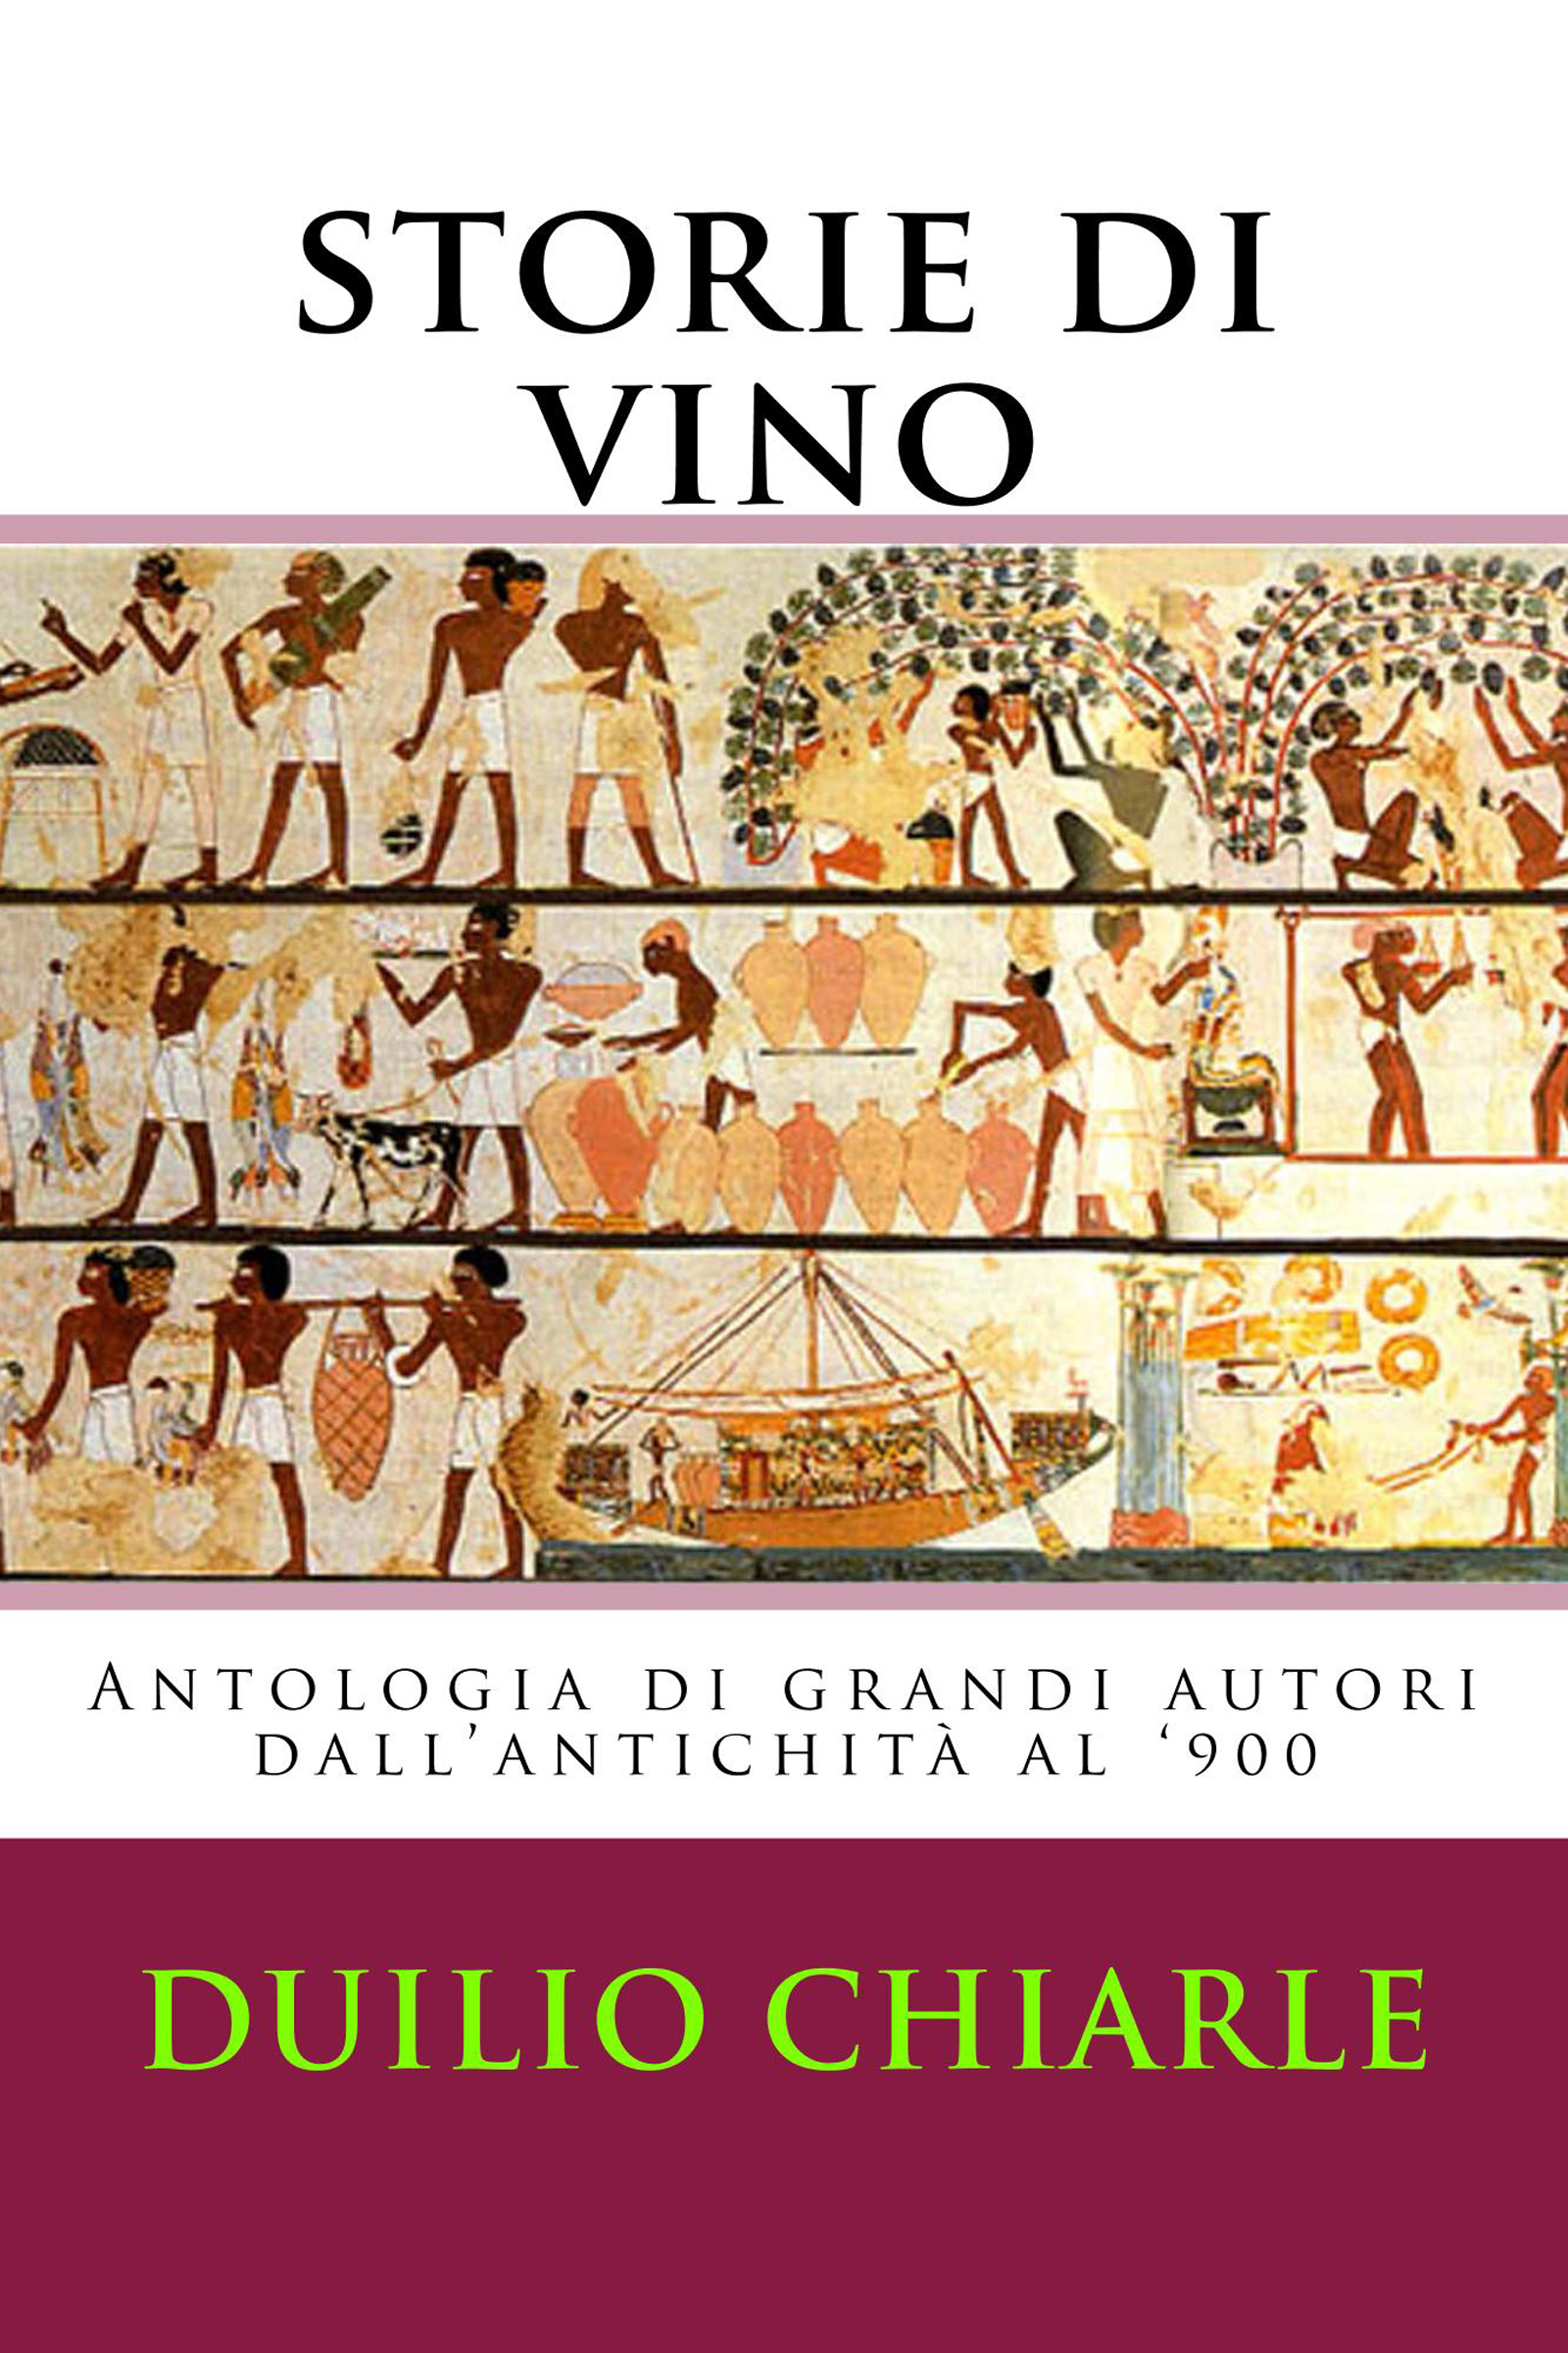 Storie di vino: Antologia di grandi autori dall'antichità al '900)